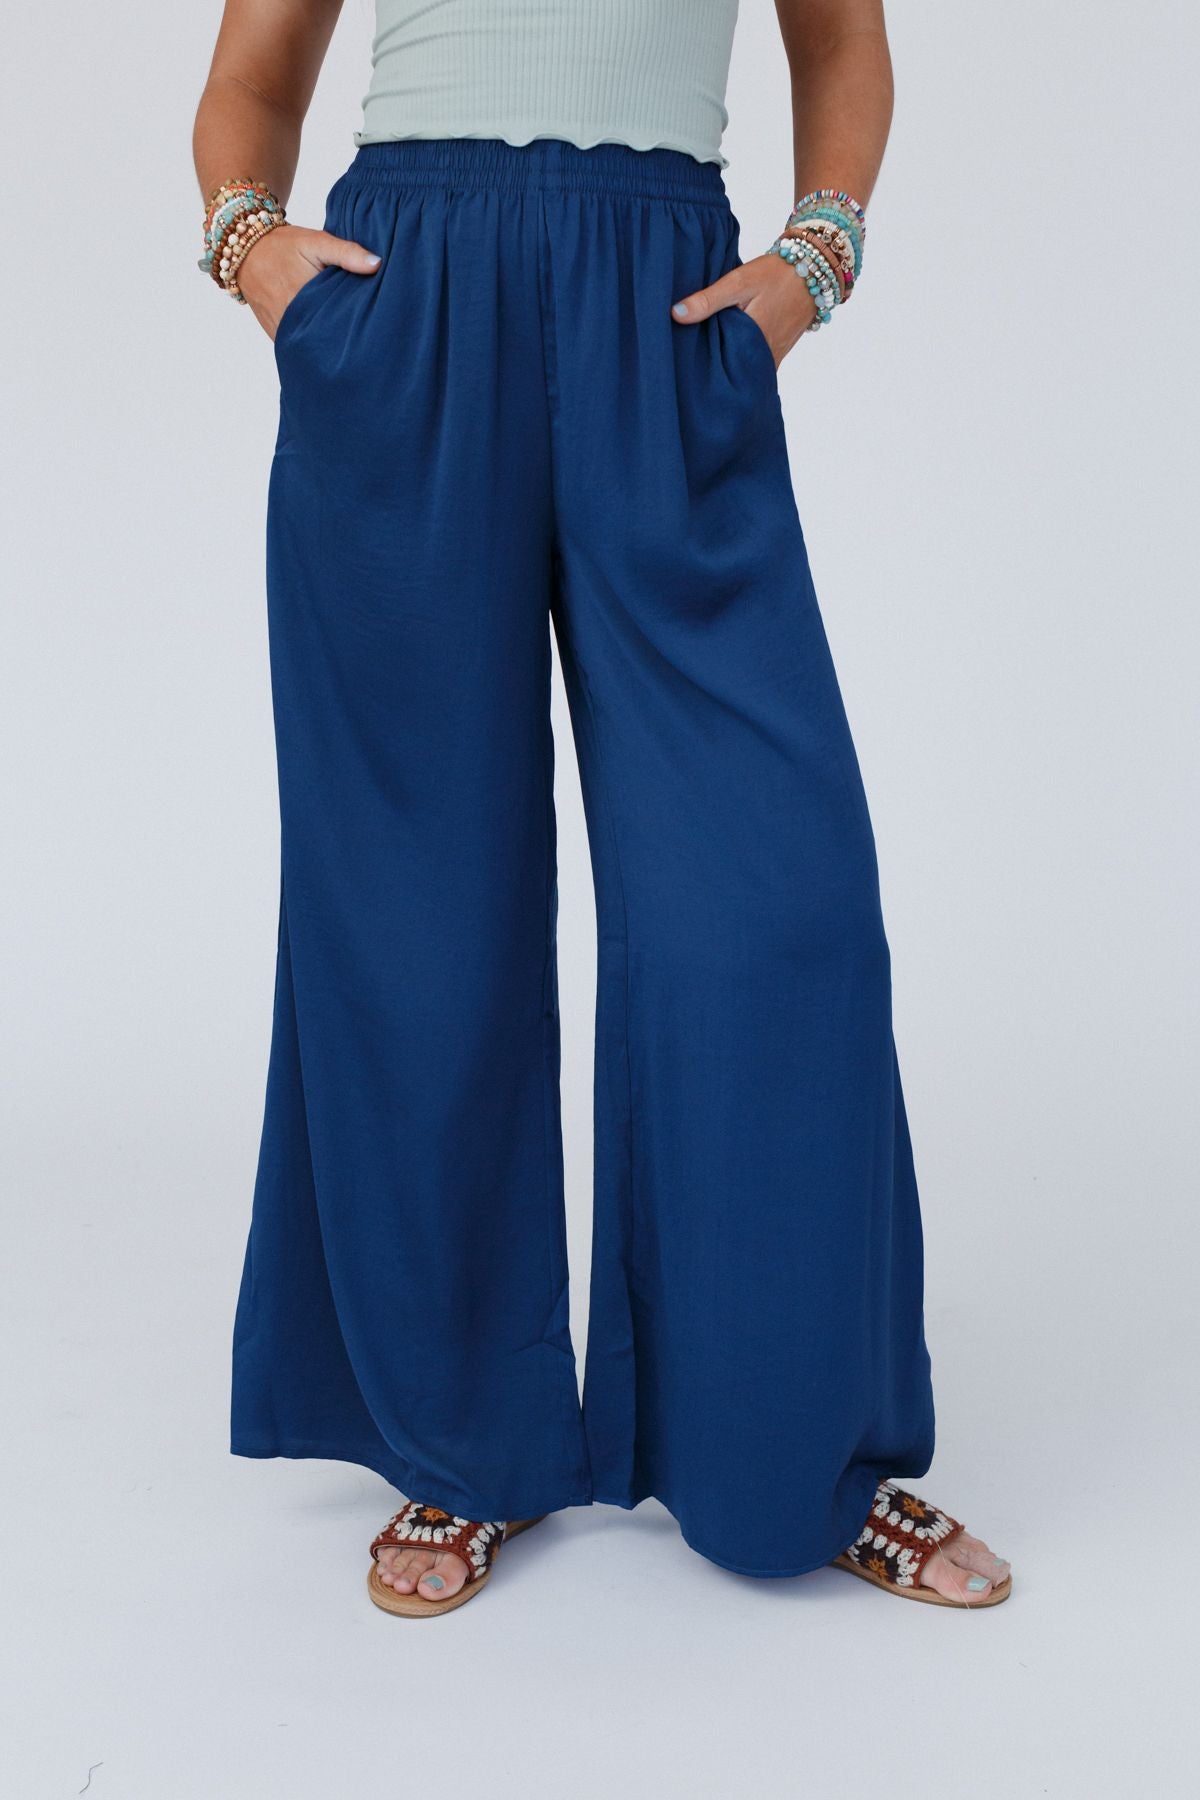 VOA Heavy Silk Palazzo Pants Women Office Wide Leg Pants Long Trousers Plus  Size Loose Navy Blue Casual Belt Basic Broeken K370 - AliExpress